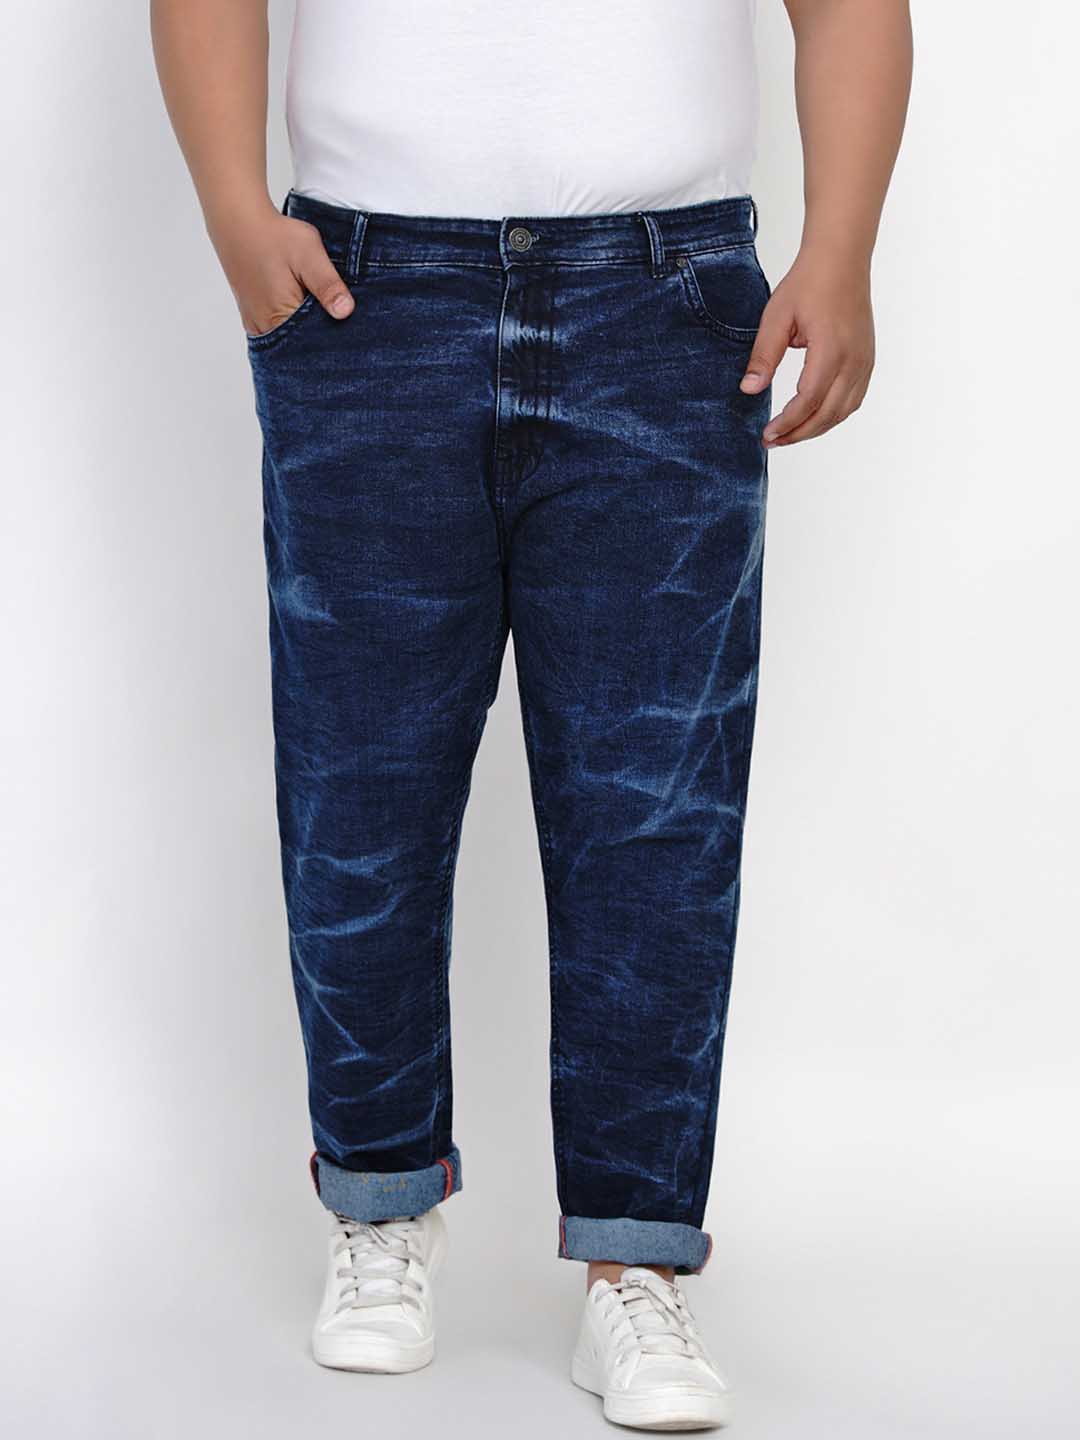 bottomwear/jeans/JPJ1292/jpj1292-3.jpg